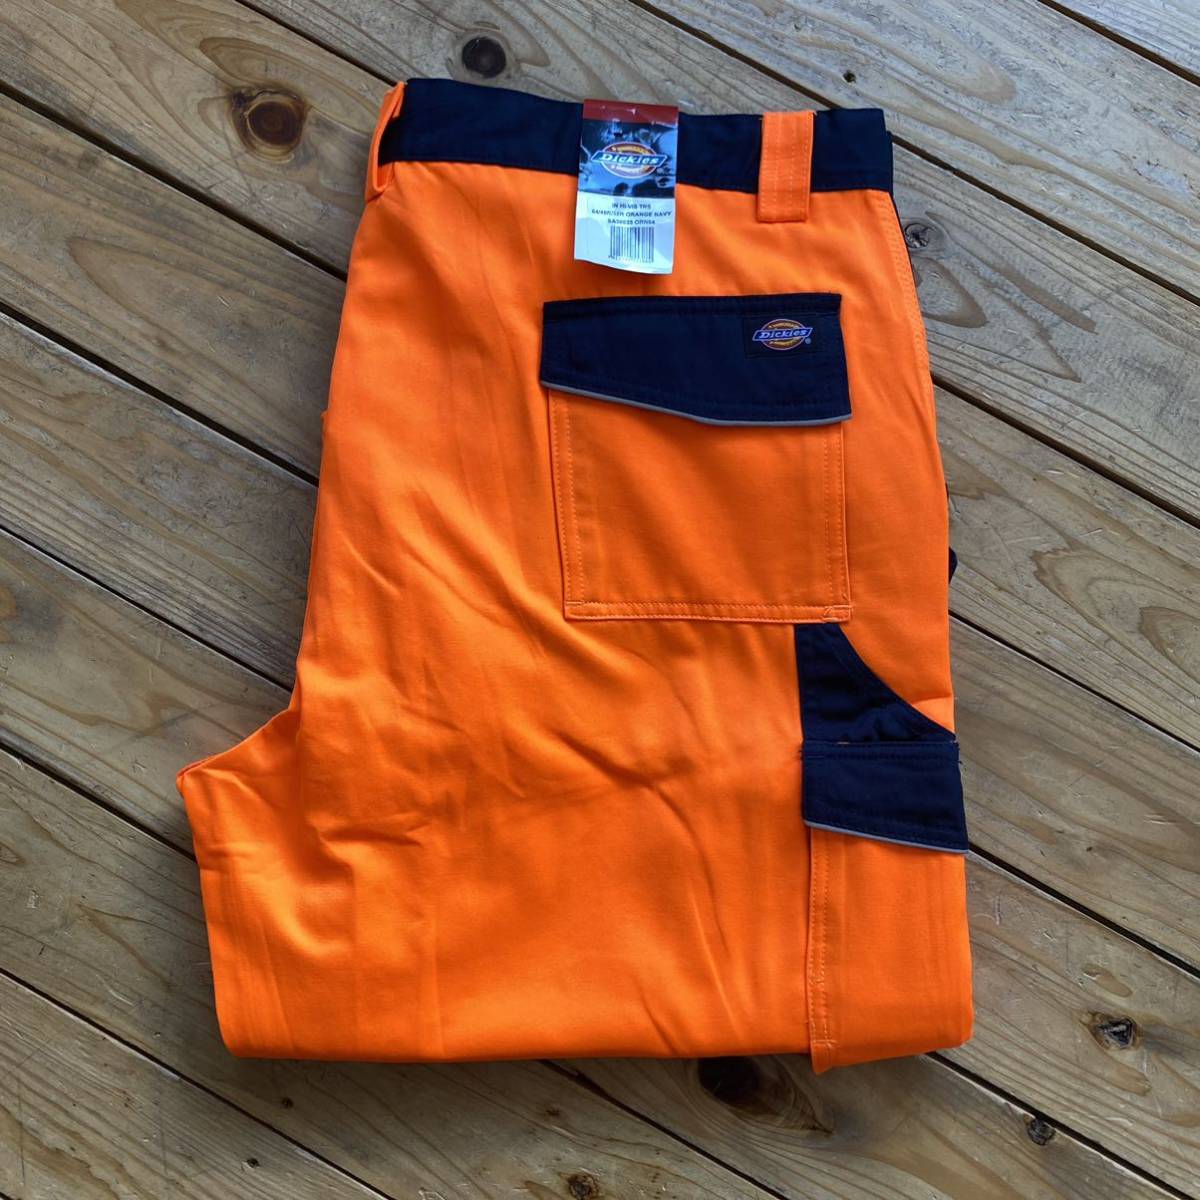 誠実 Trousers Industry Vis Hi ディッキーズ Dickies デッドストック カーゴパンツ P1048 ワーク オレンジ 蛍光 48サイズ メンズ トラウザー ワークパンツ、ペインターパンツ